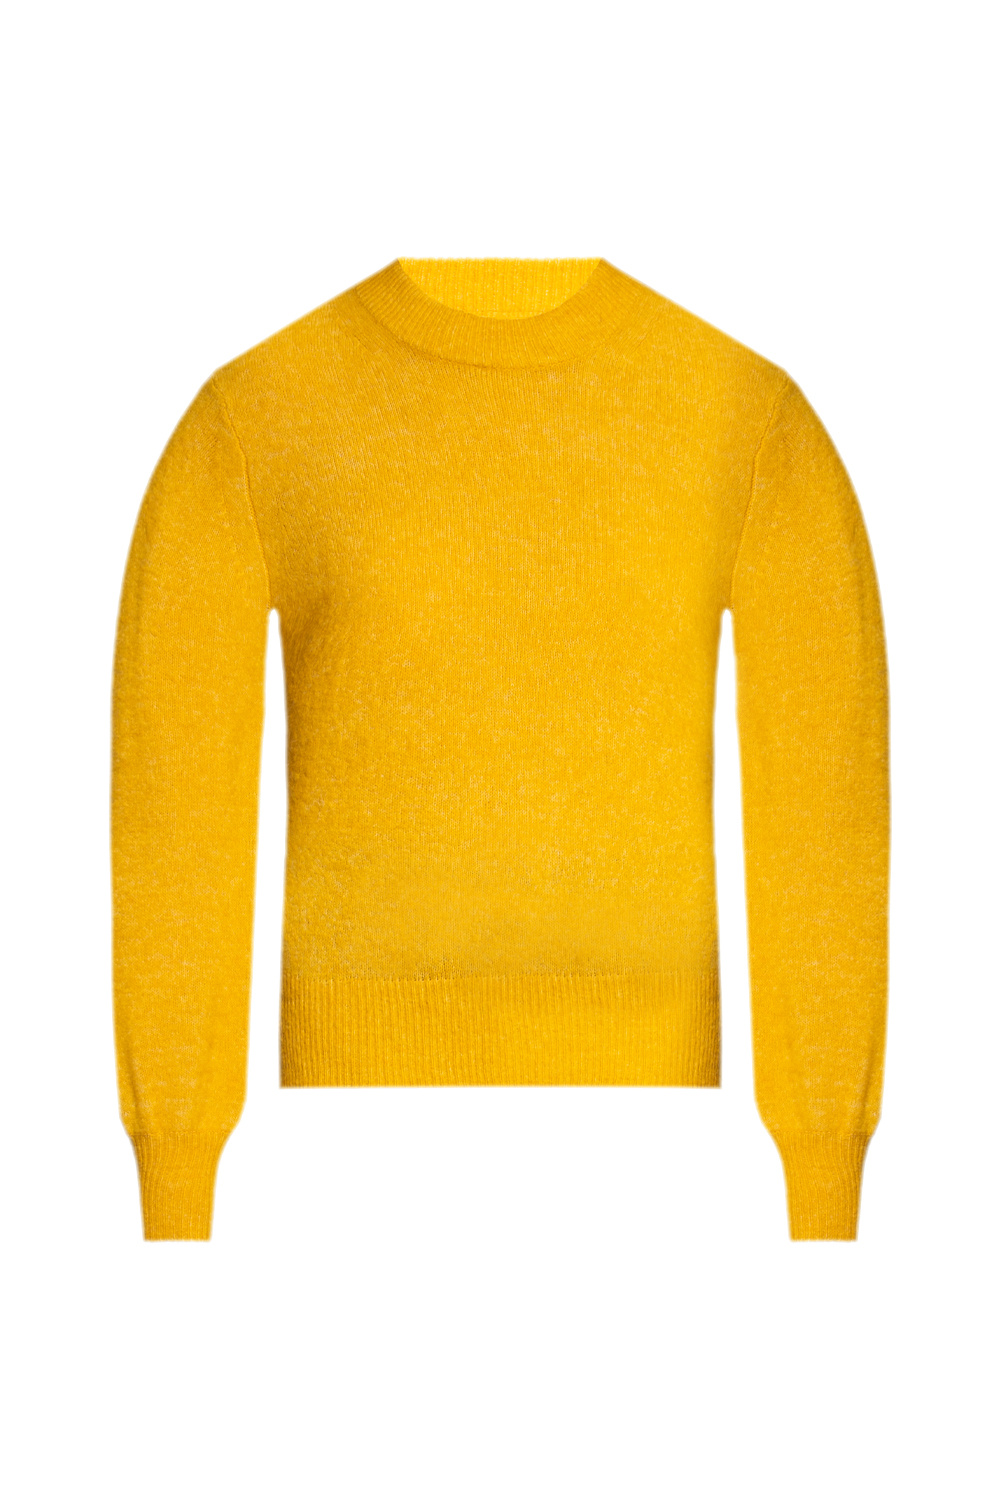 Samsøe Samsøe Crewneck sweater